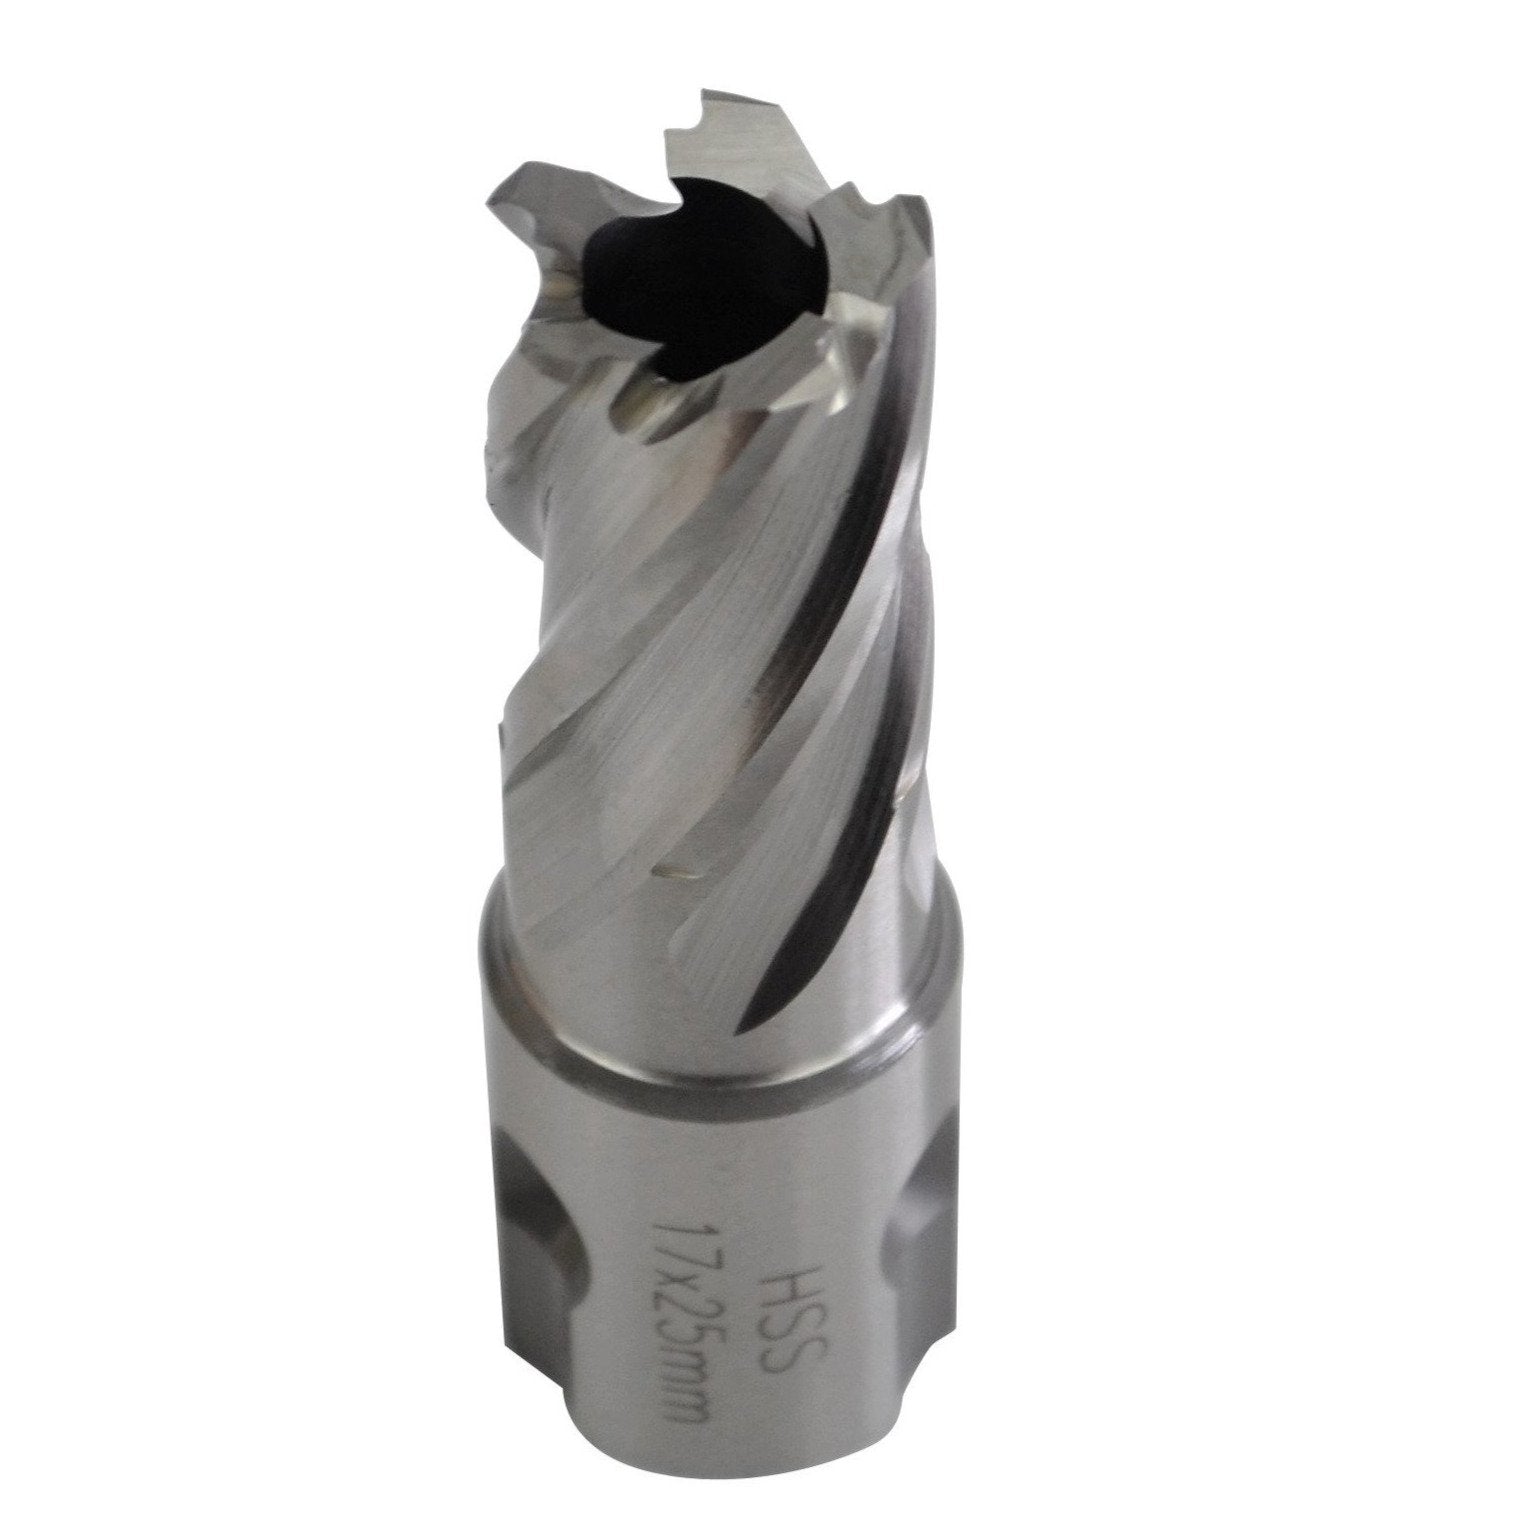 annular cutter HSS 17x25mm broach cutter universal shank rotoabroach magnetic drill CNC metalwork supplies